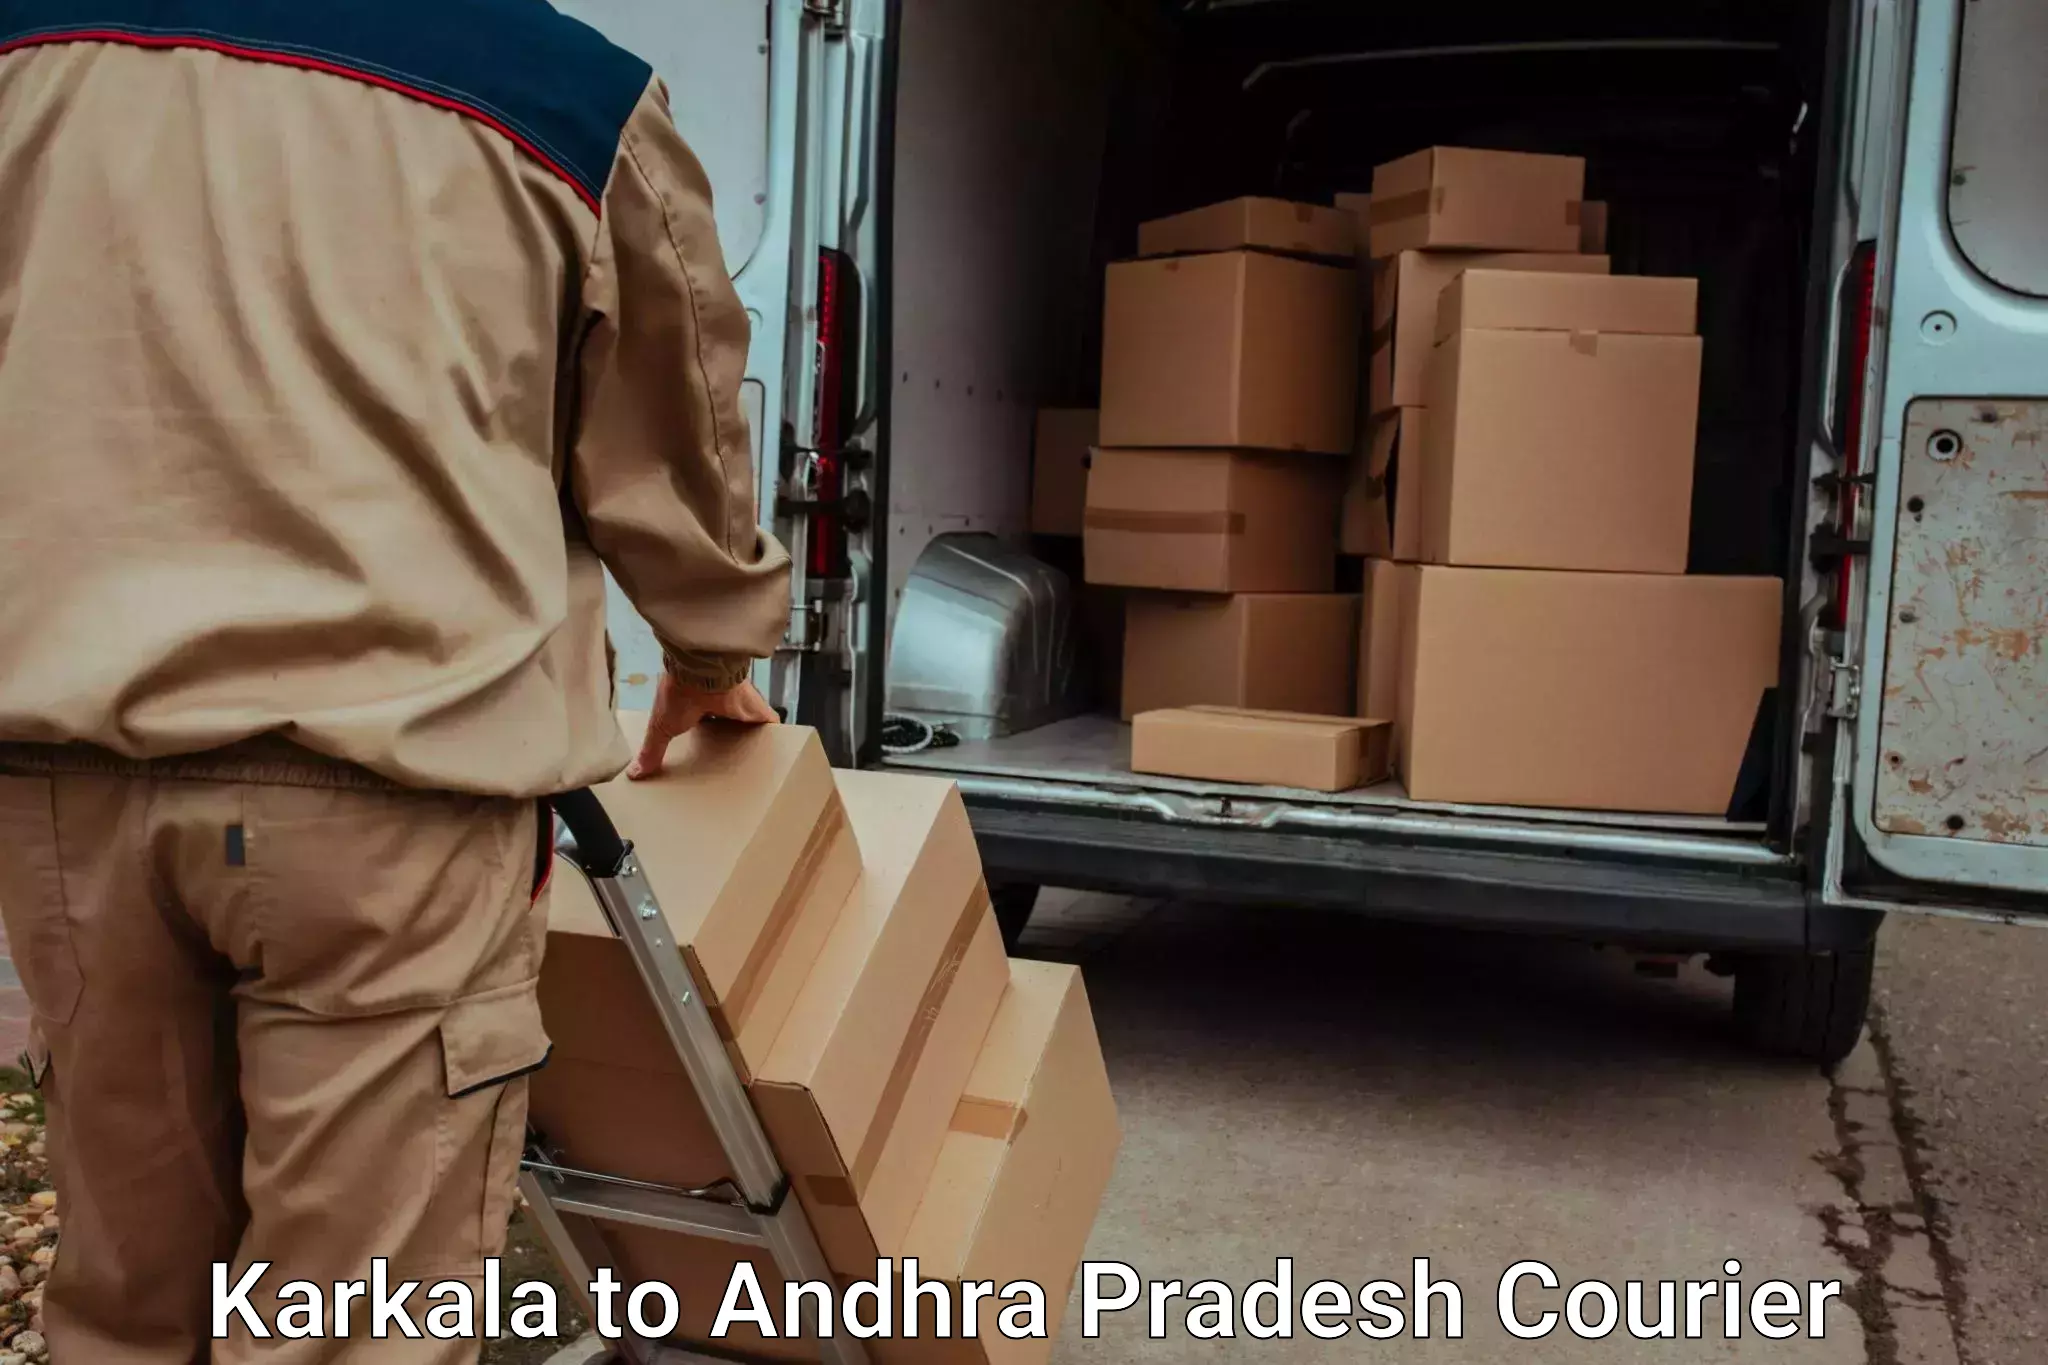 Trusted moving company Karkala to Andhra Pradesh